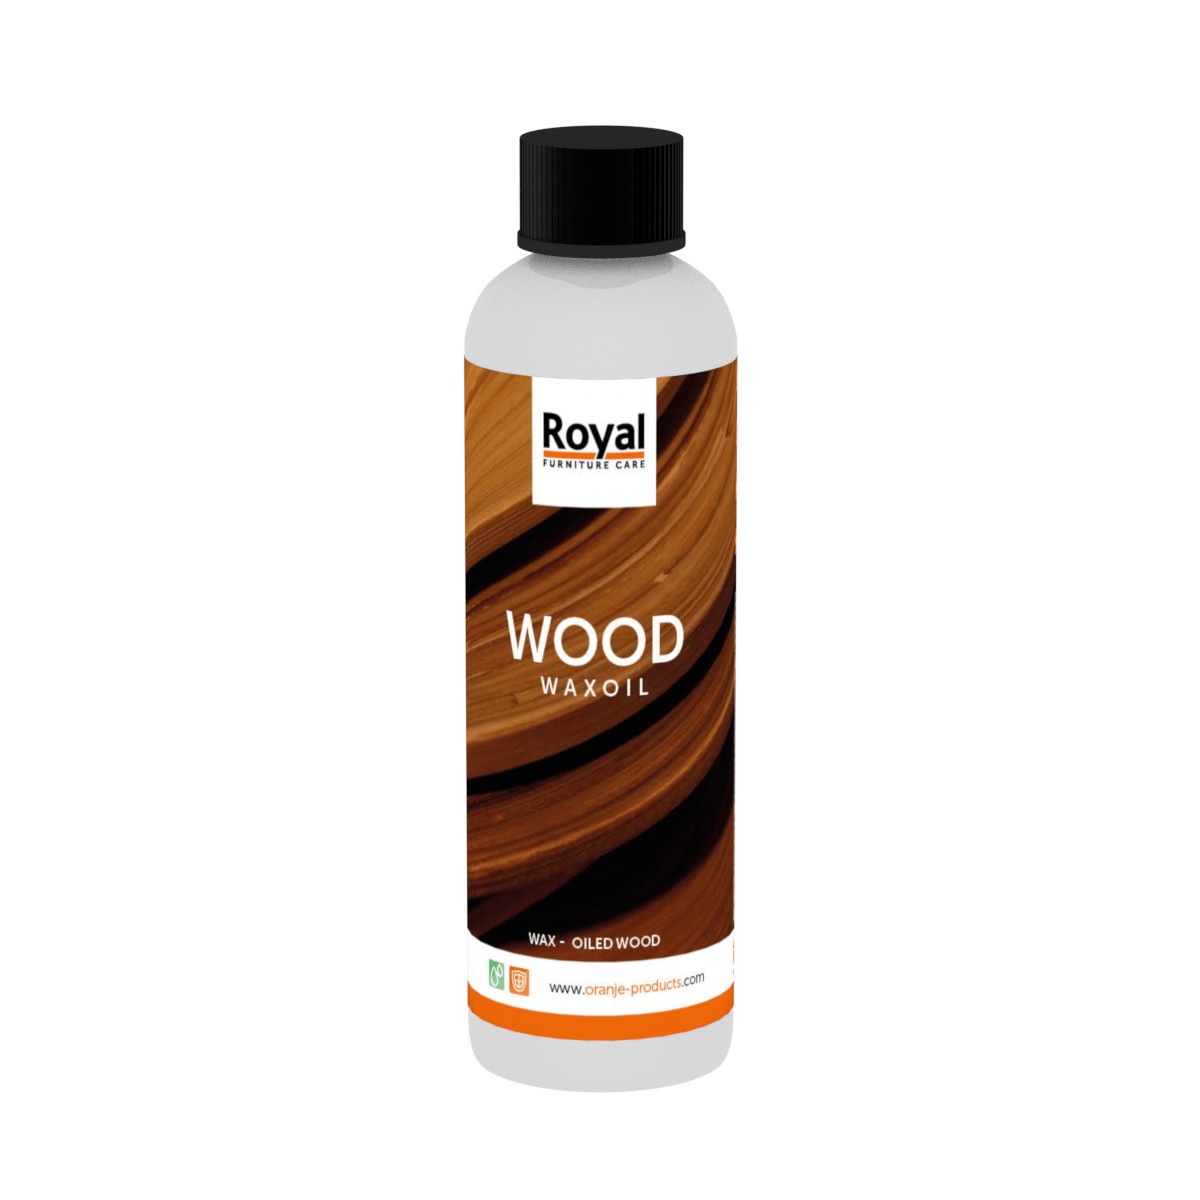 Wax Oil Wood